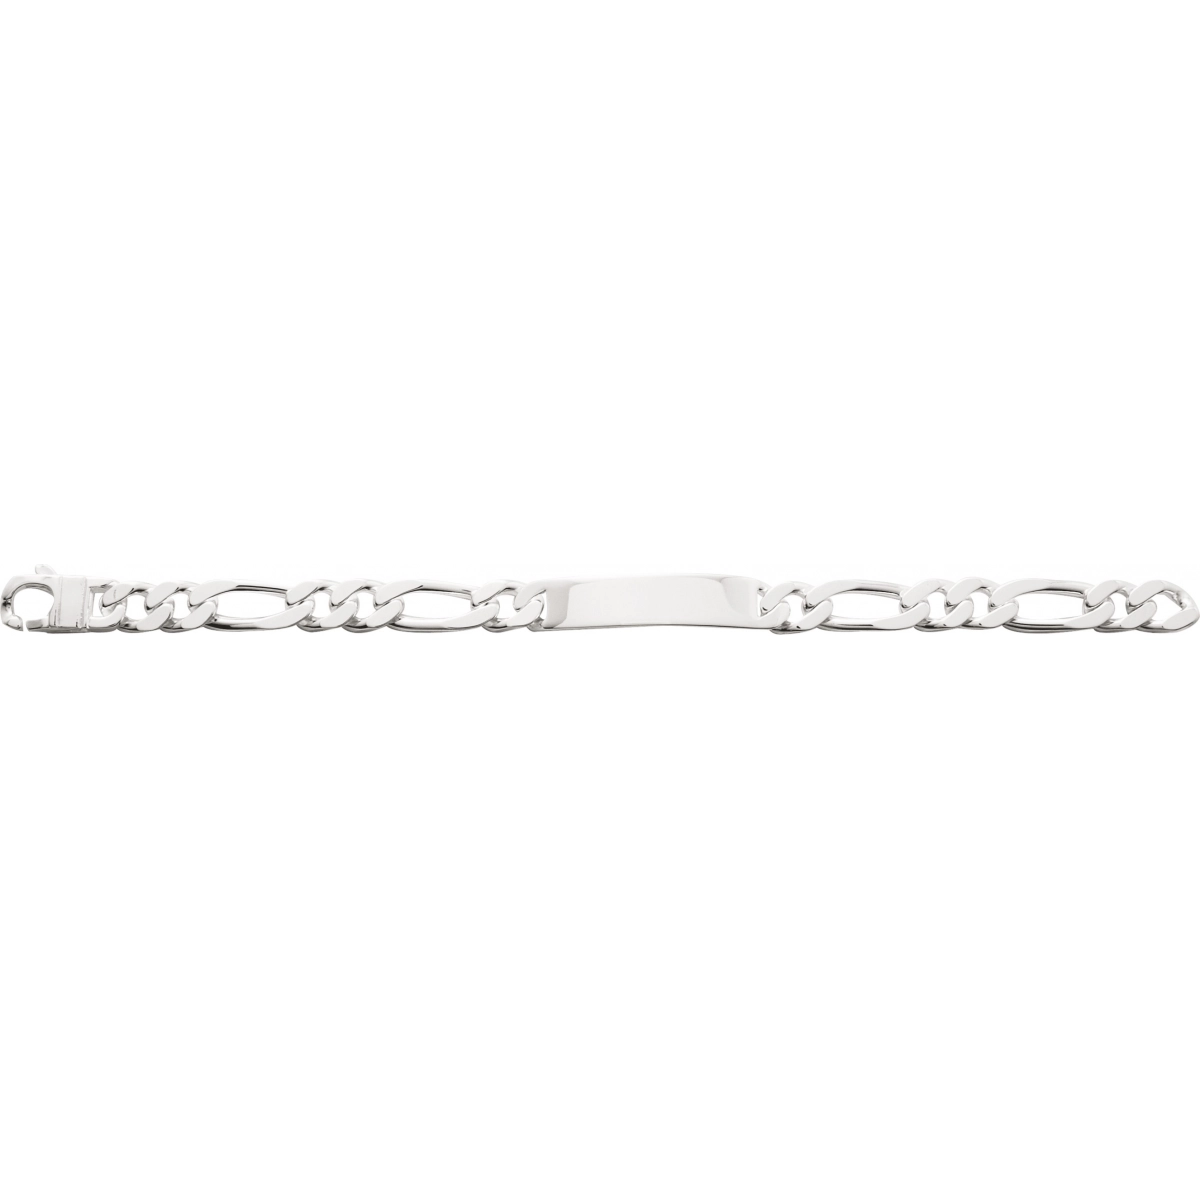 ID bracelet 10mm 925 Silver Lua Blanca  327473.89 - Size 22